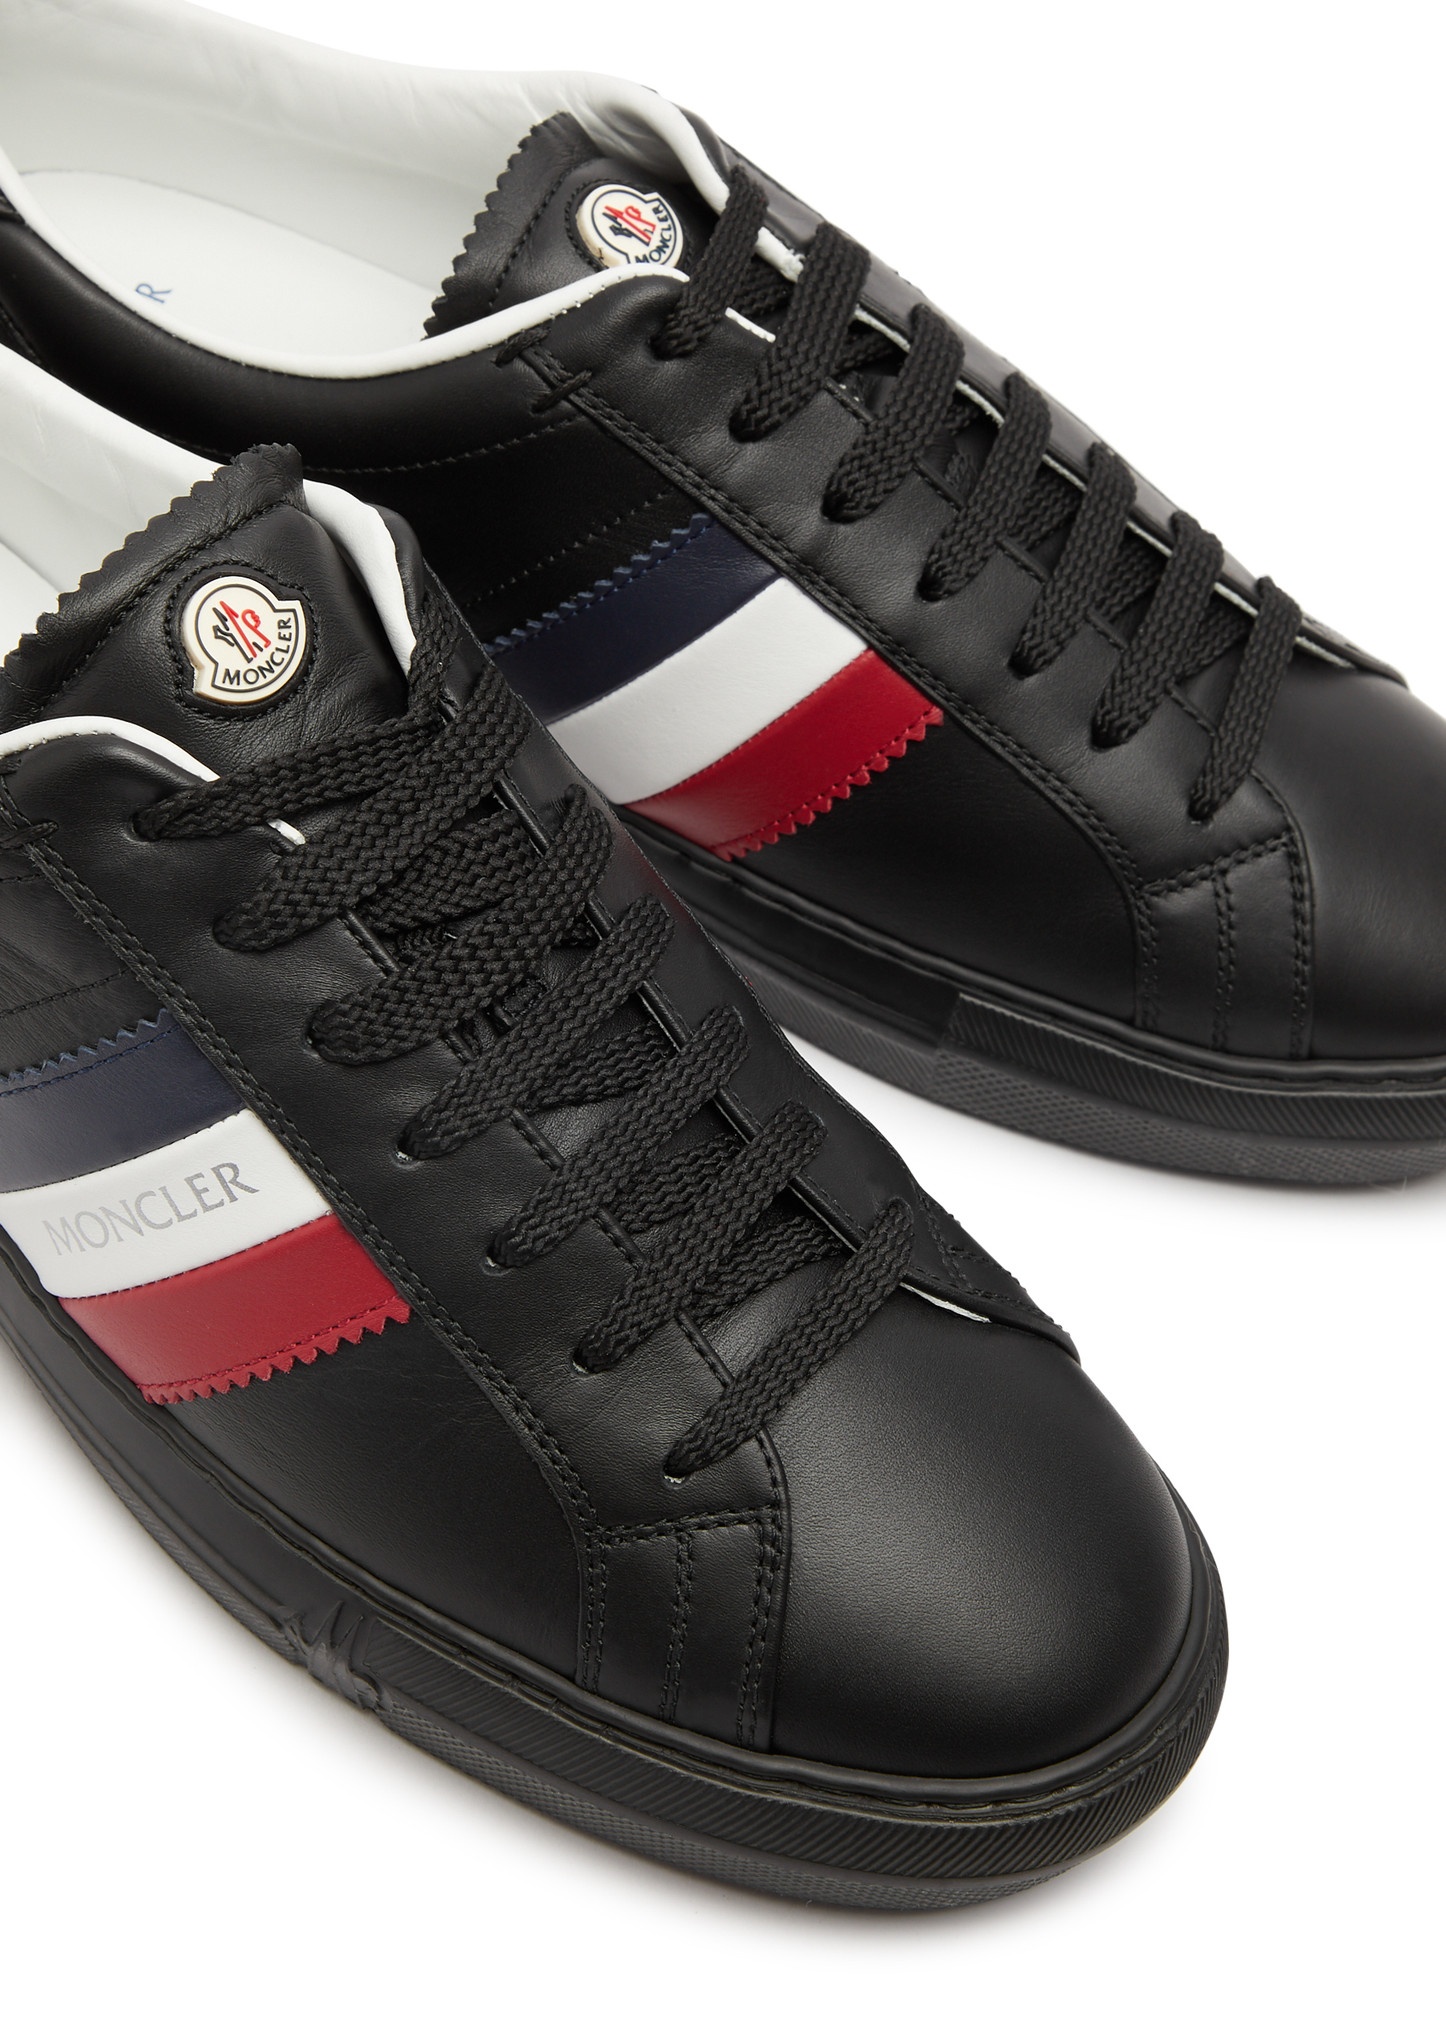 New Monaco leather sneakers - 3